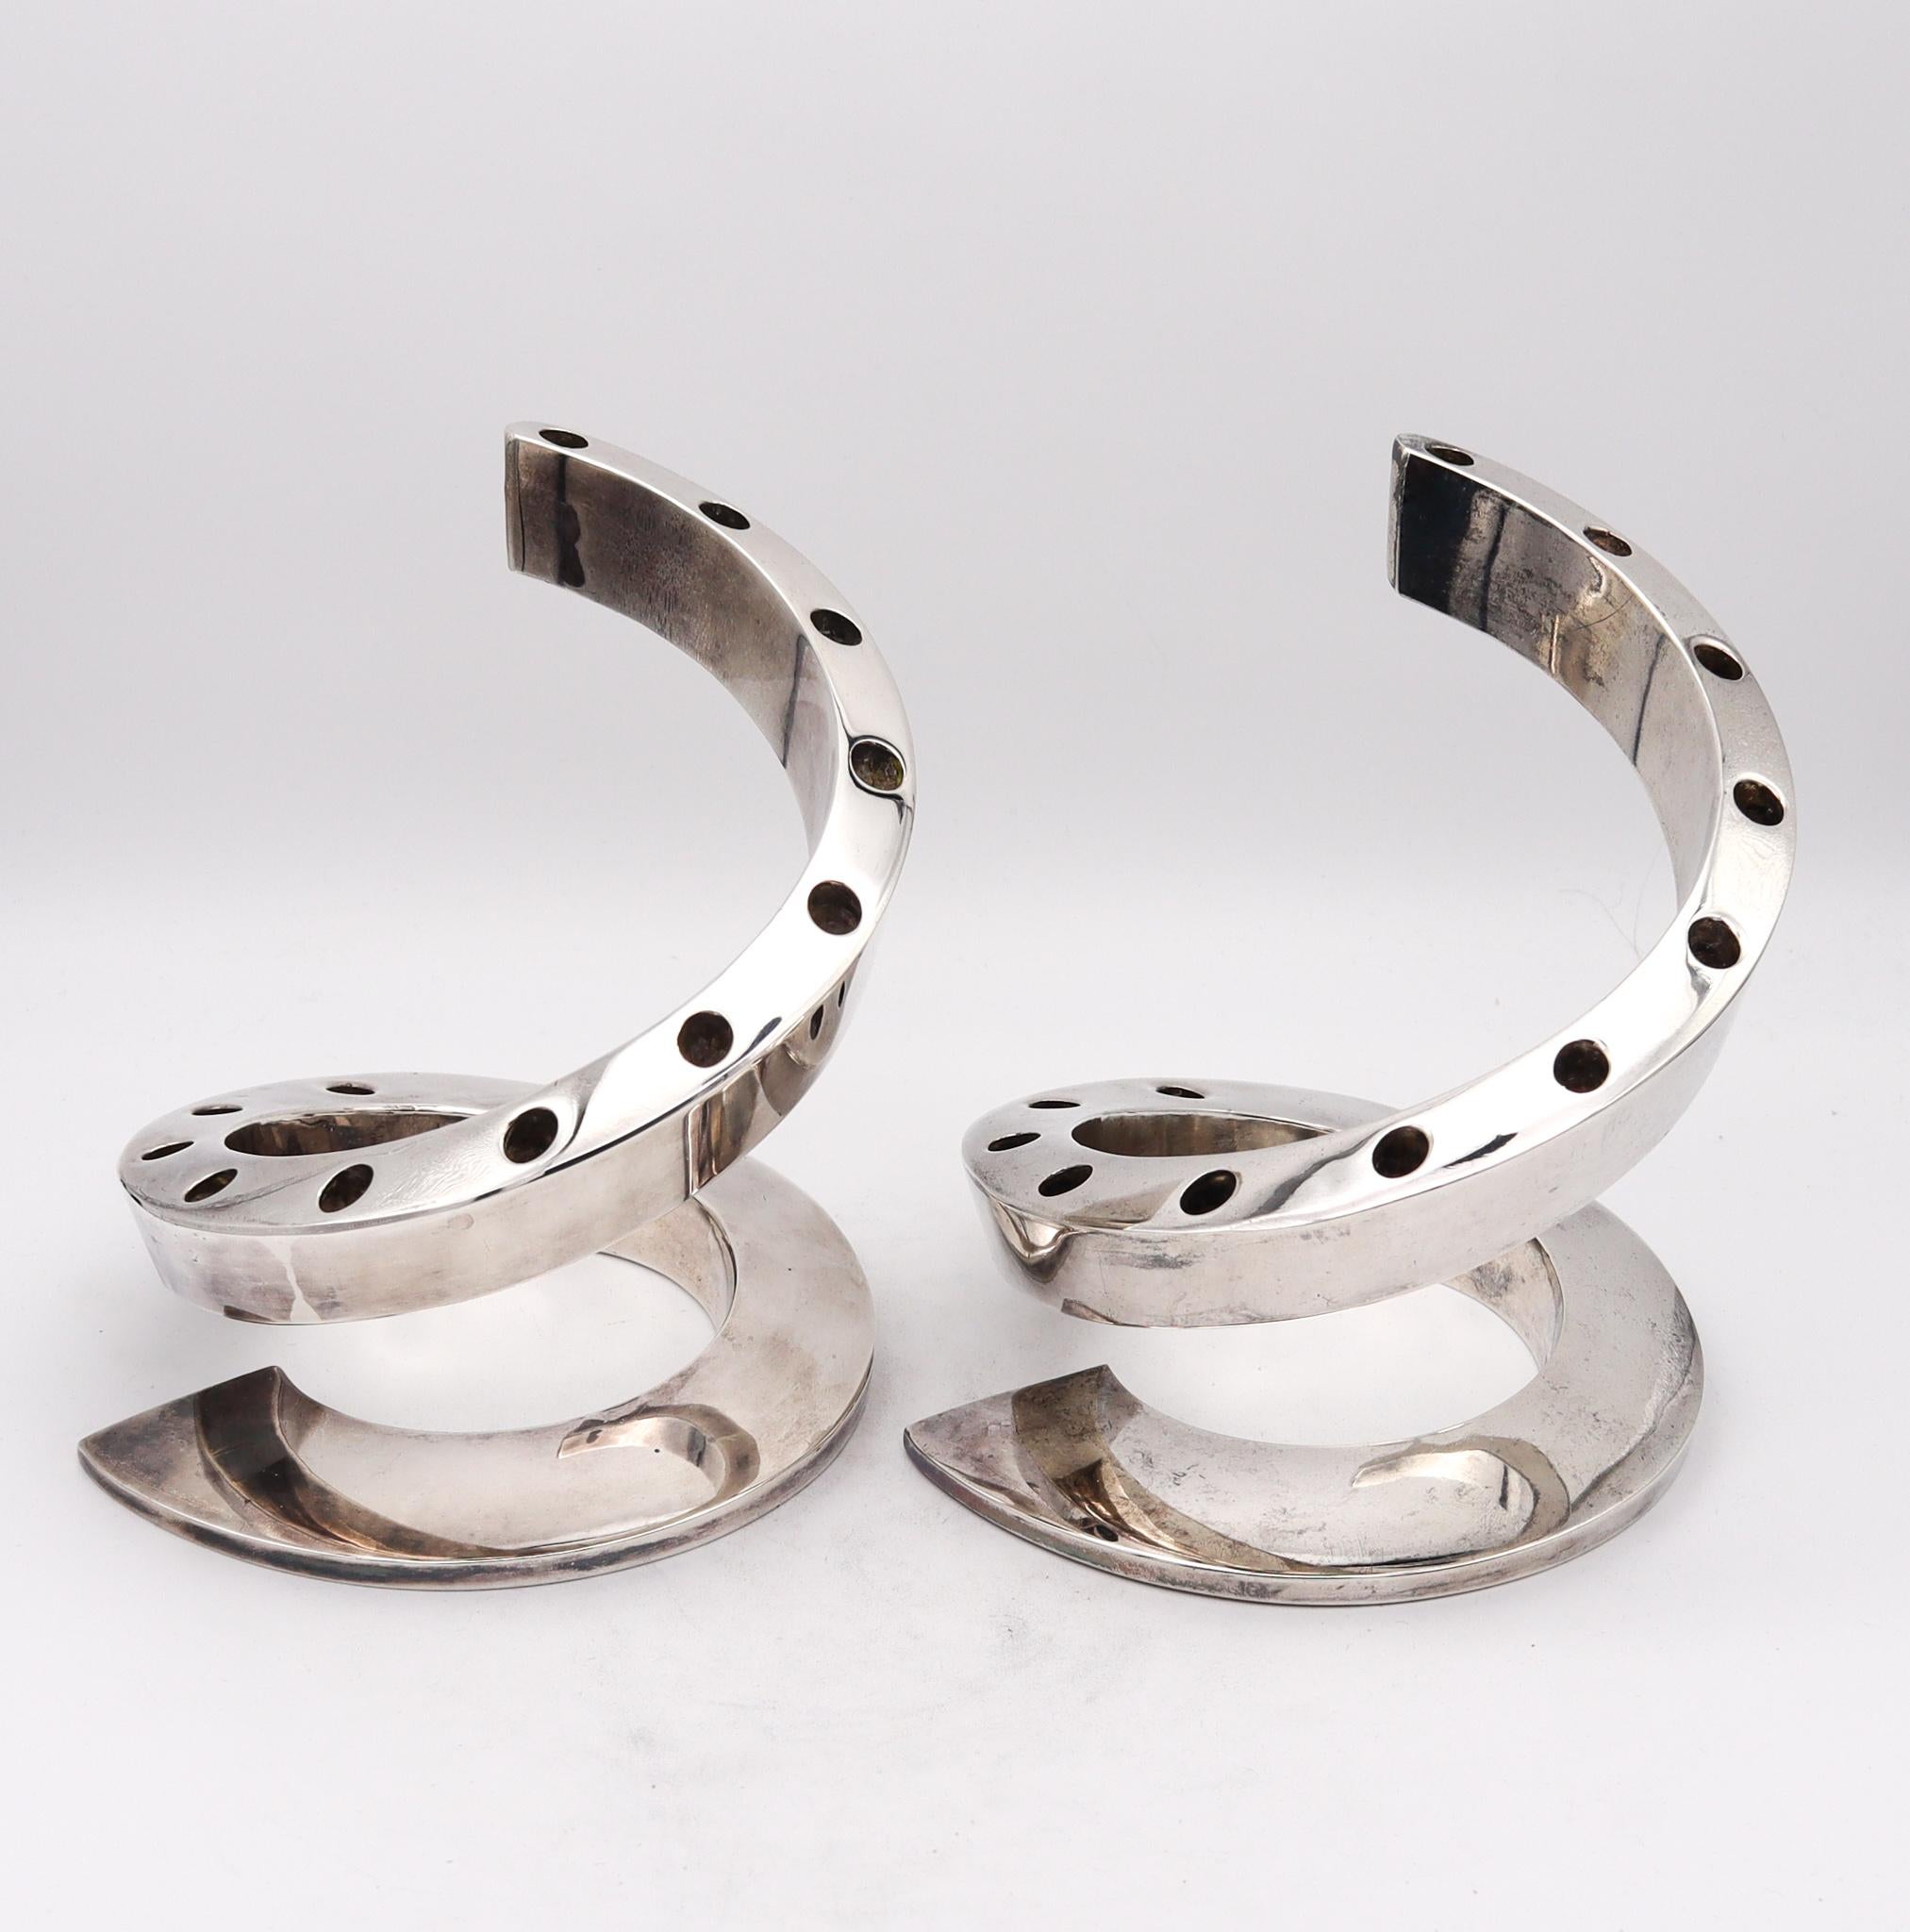 Ein Paar Wirbelkerzenhalter, entworfen von Bertil Vallien (1938-).

Wunderschönes Paar skulpturaler Kerzenständer mit Wirbeln, die in den 1970er Jahren von Bertil Vallien in Schweden geschaffen wurden. Dieses Paar wurde von der Firma Danks Design